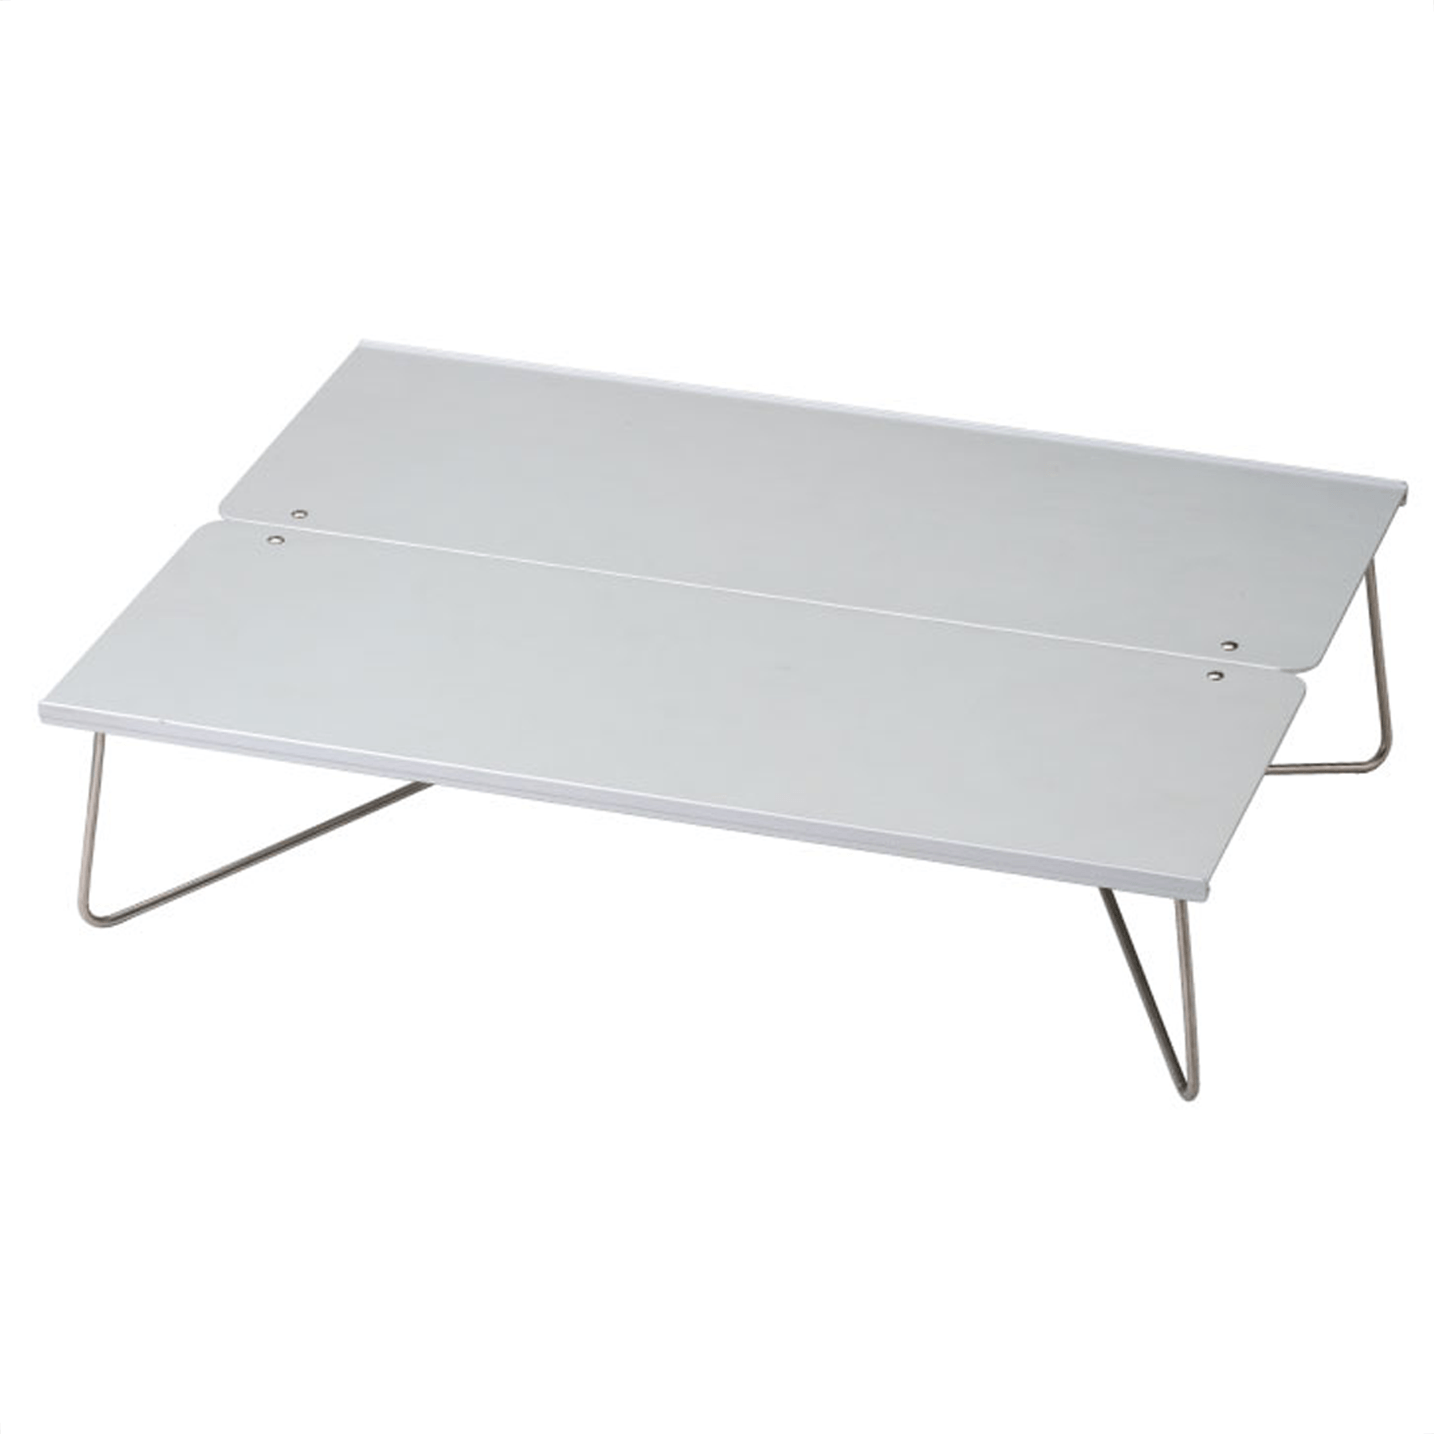 SOTO Field Hopper Large Pop Up Table (ST-631) – Bear Lockers